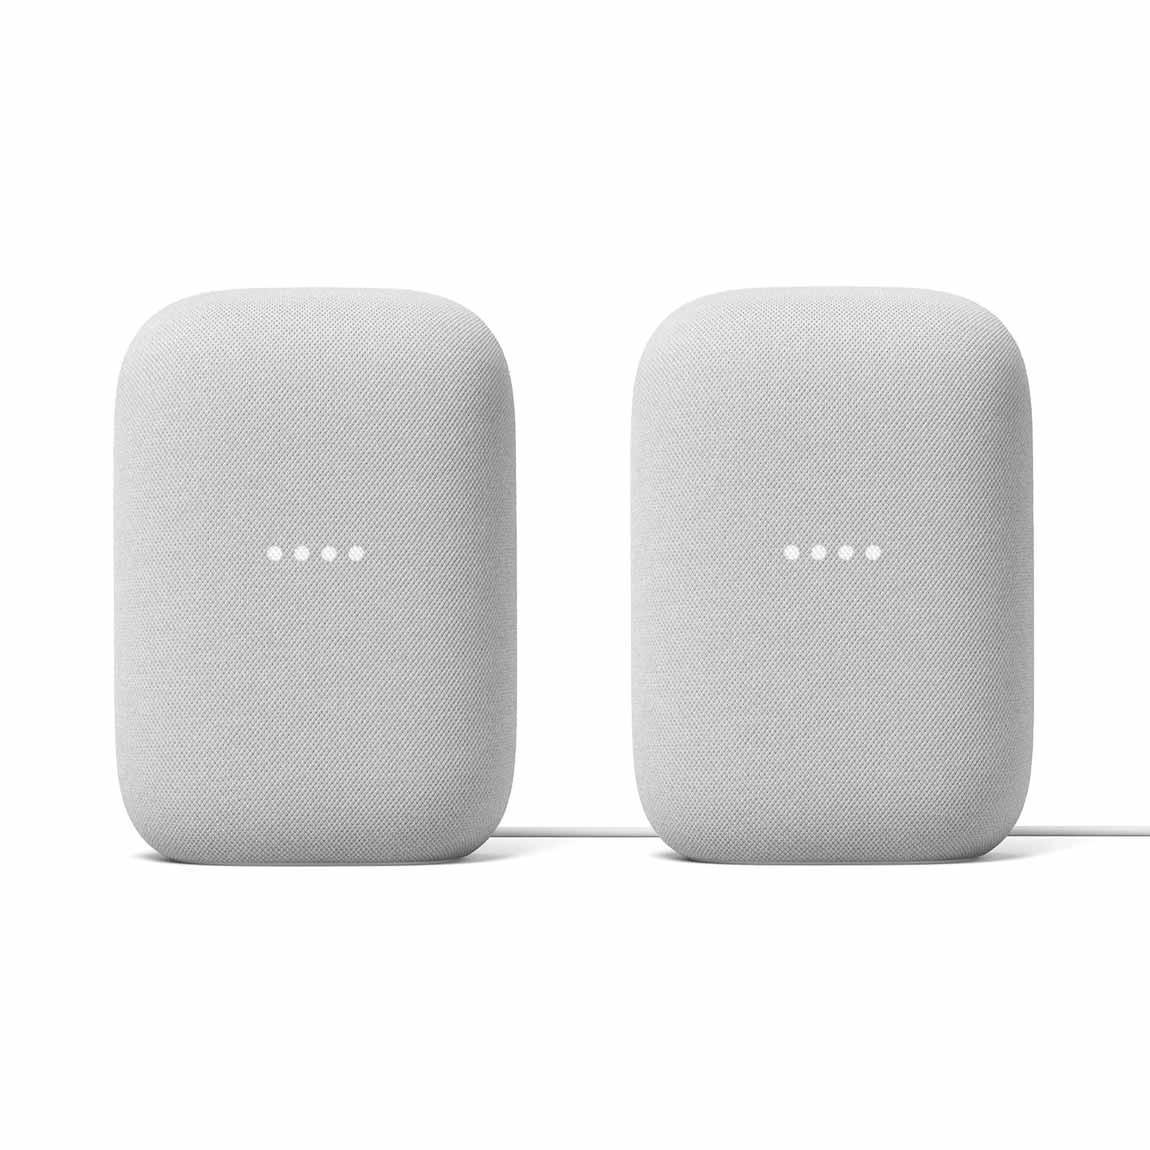 Google Nest Audio – Stereo-Set – Smart Speaker mit Sprachassistent – Deal, Schnäppchen, sparen